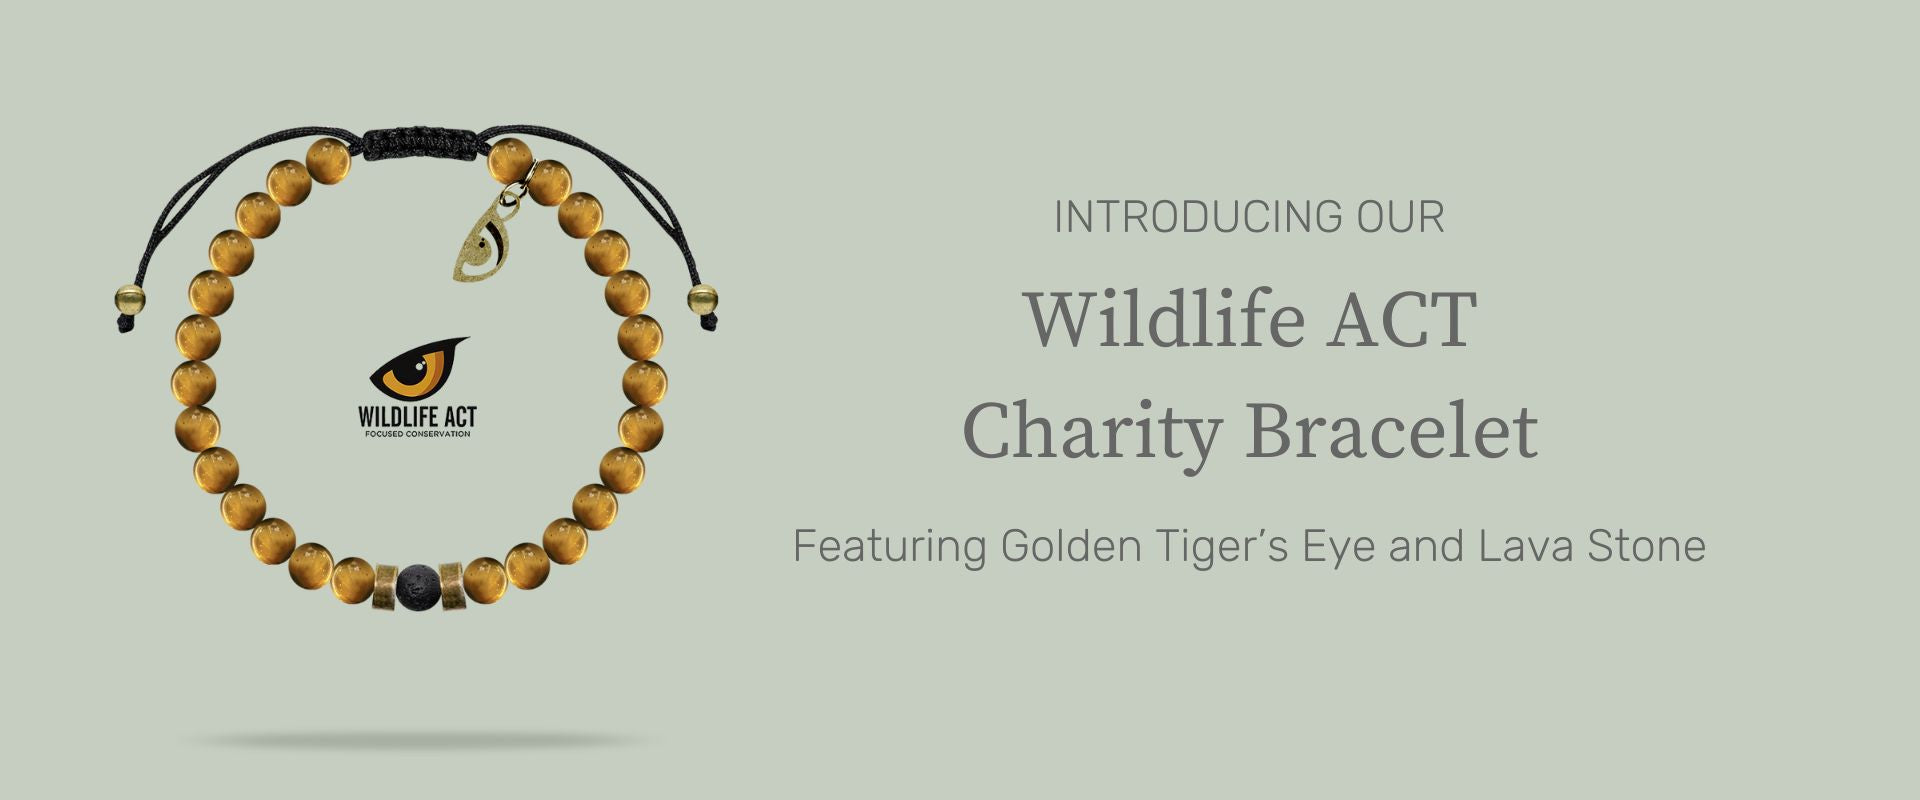 Wildlife Act Charity Bracelet